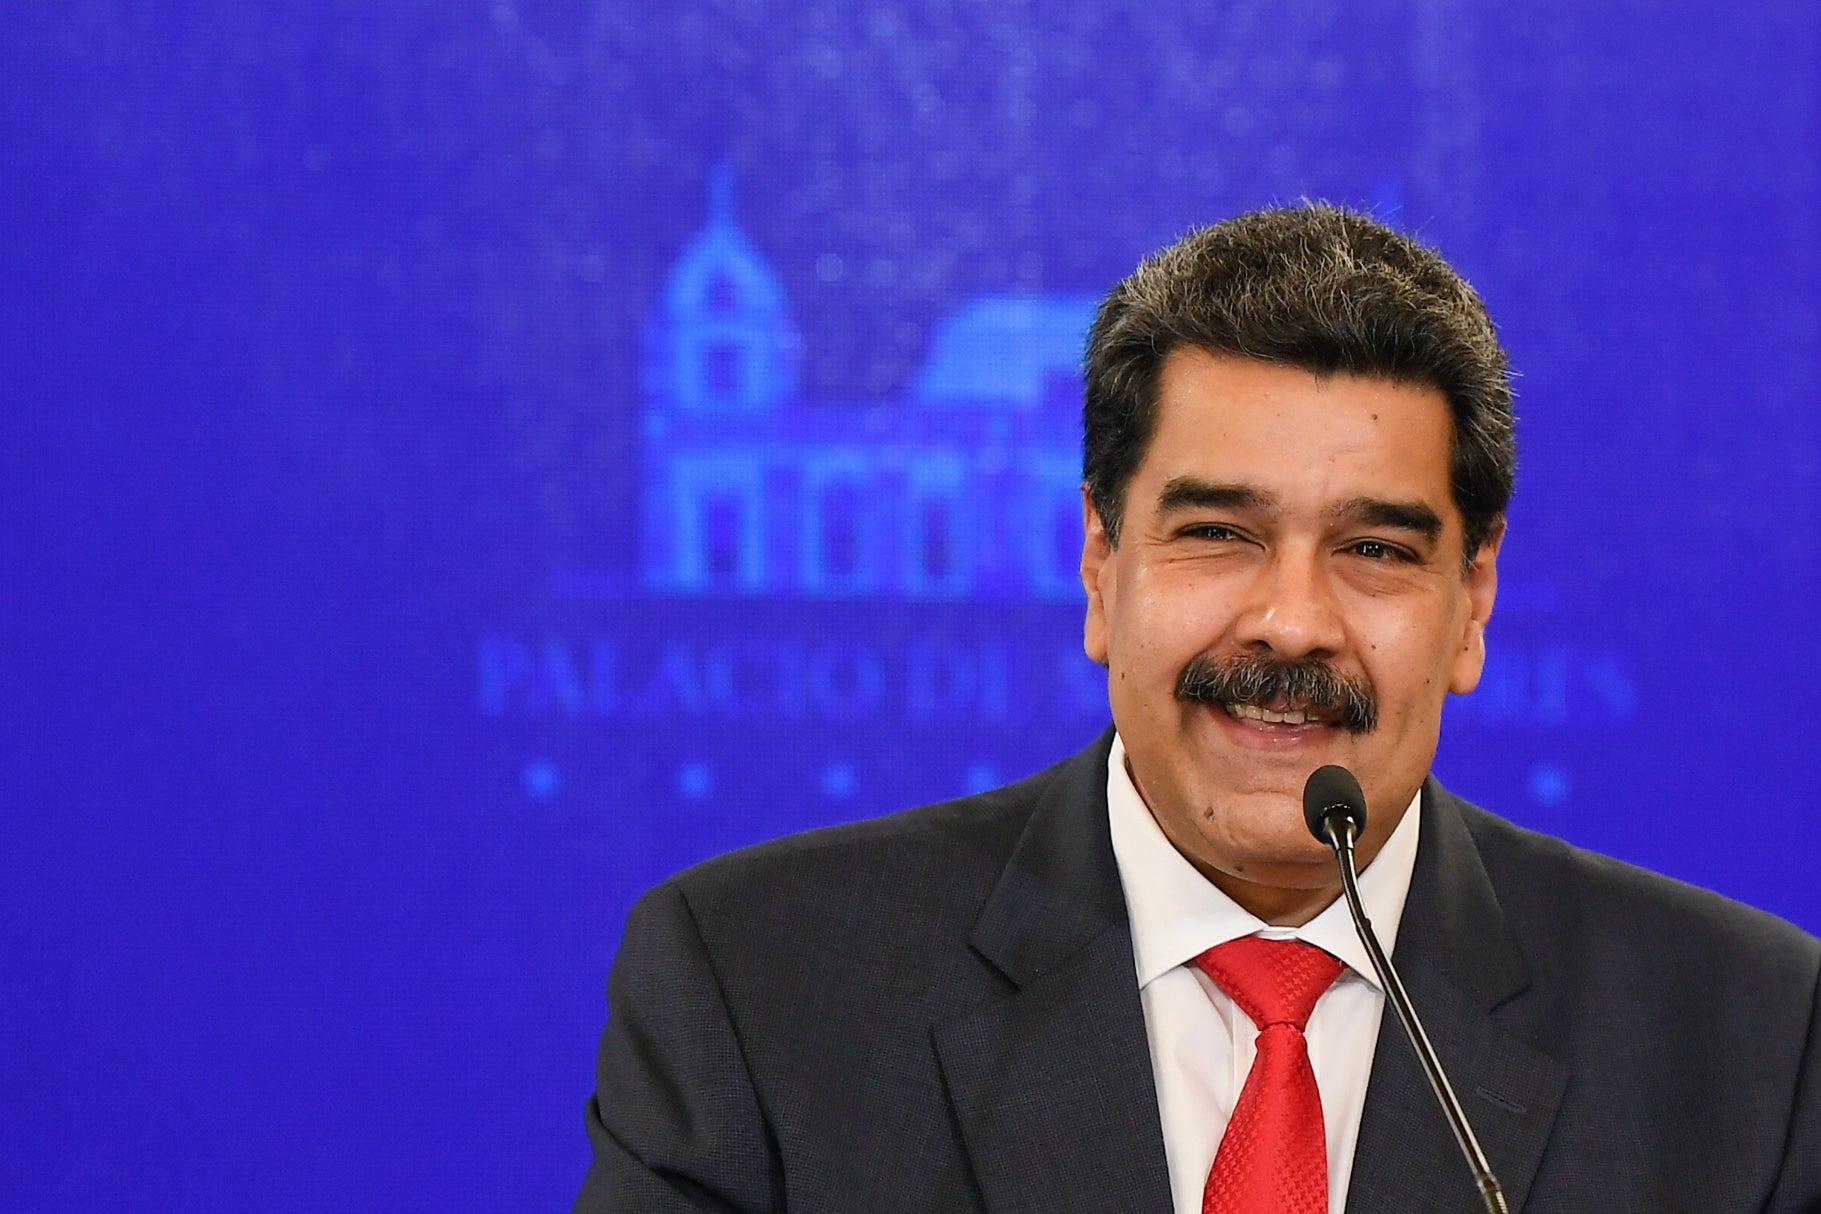 ARCHIVO - En esta foto de archivo del 8 de diciembre de 2020, el presidente de Venezuela, Nicolás Maduro, sonríe durante una conferencia de prensa en el palacio presidencial de Miraflores en Caracas, Venezuela, el martes 8 de diciembre de 2020. Maduro ha enfrentado cargos de presunto narcoterrorismo, corrupción y narcotráfico por tribunales federales de EEUU desde marzo de 2020.&nbsp;